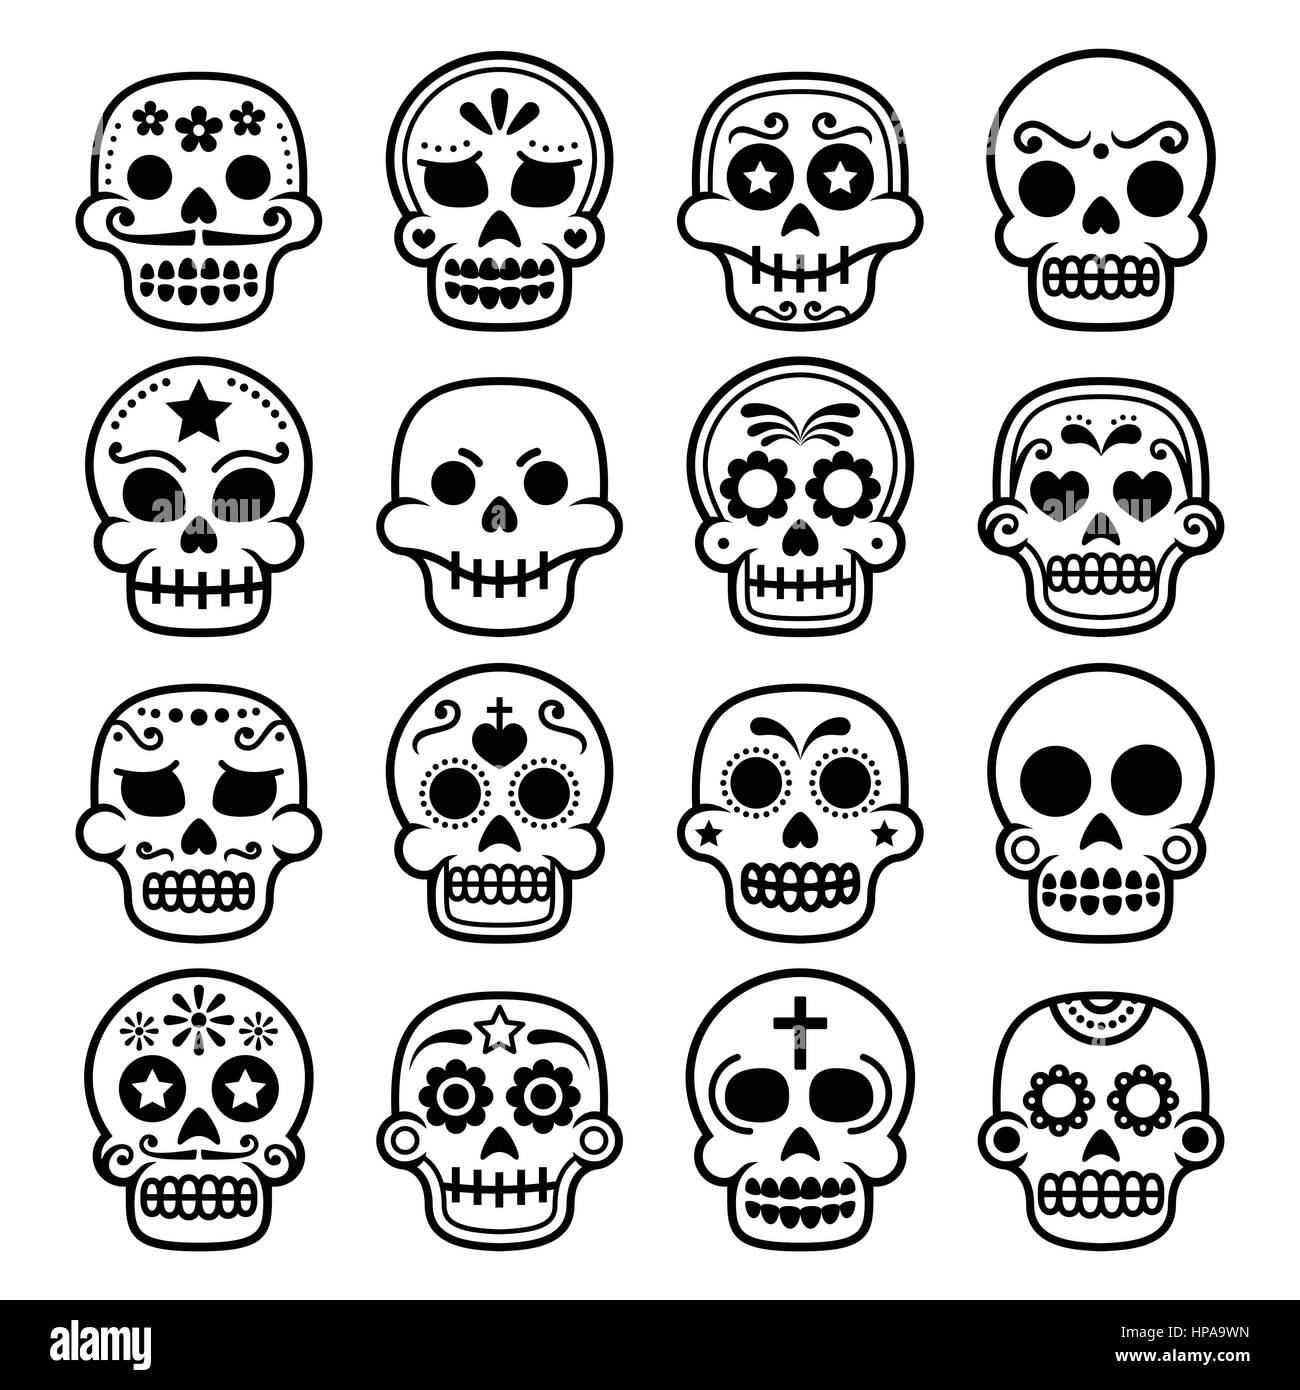 Halloween, Mexican sugar skull, Dia de los Muertos - cartoon icons Stock Vector